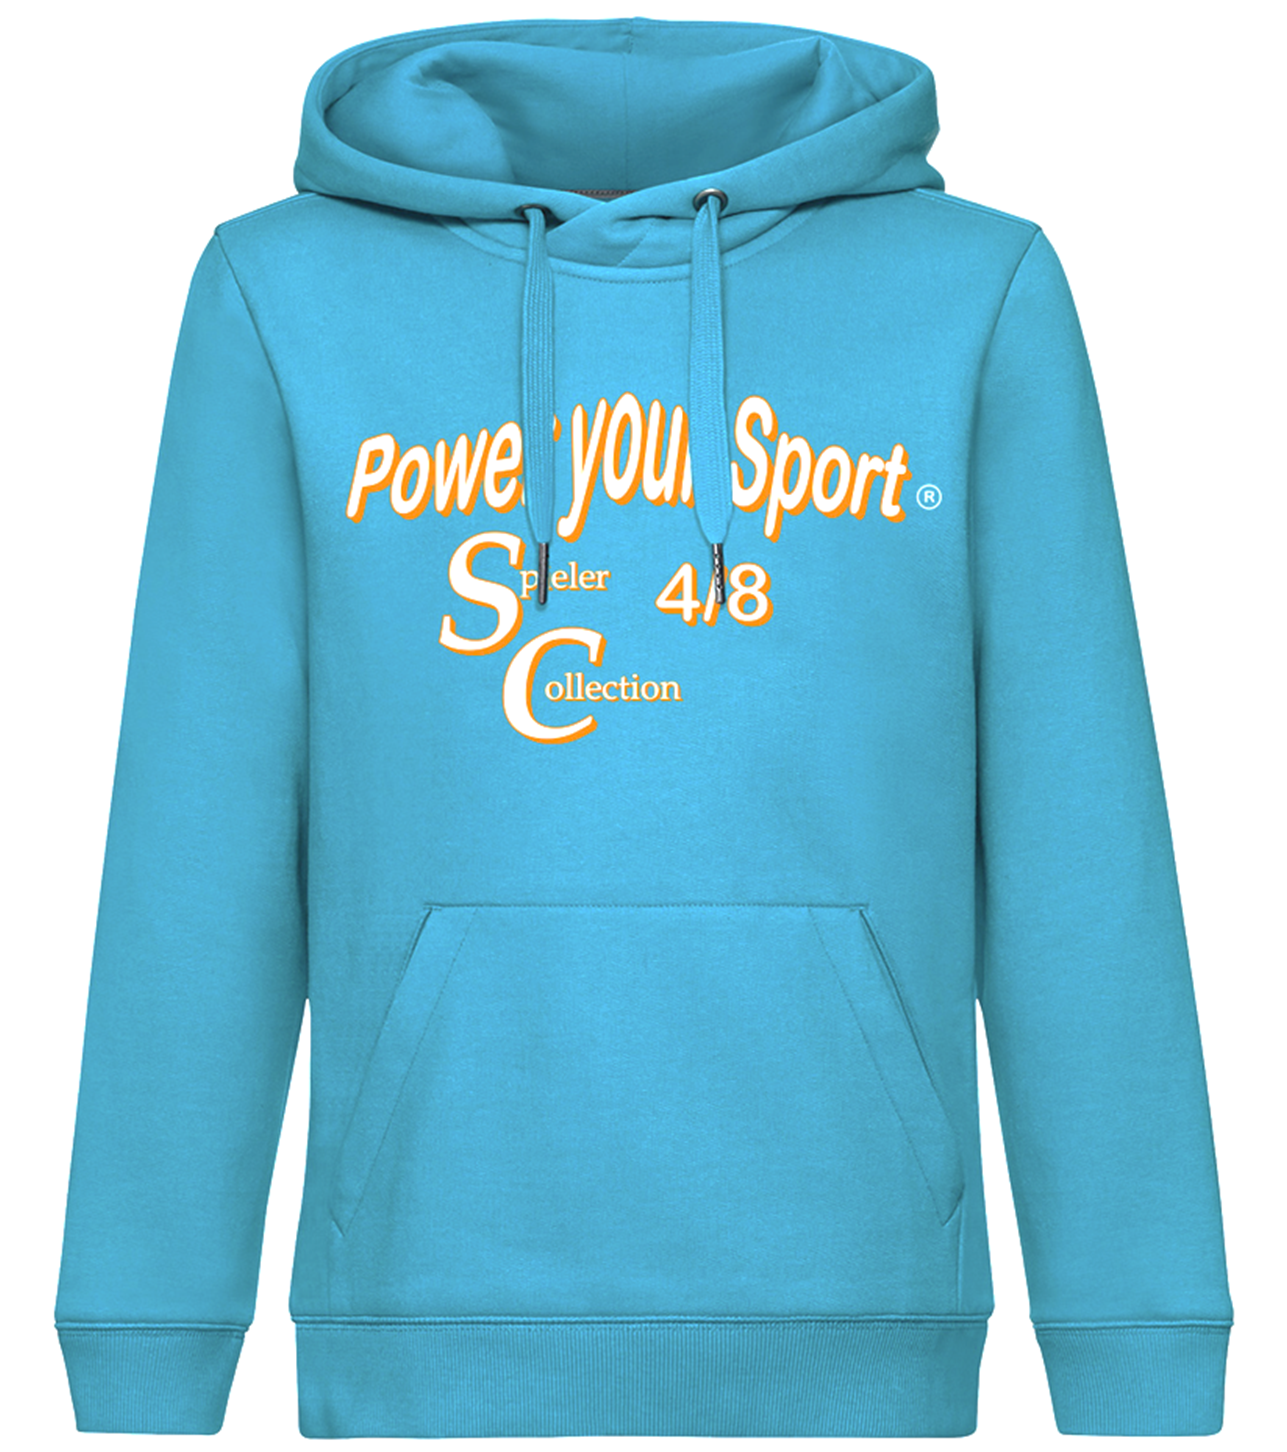 Herren Sweatshirt mit Power your Sport Logo.